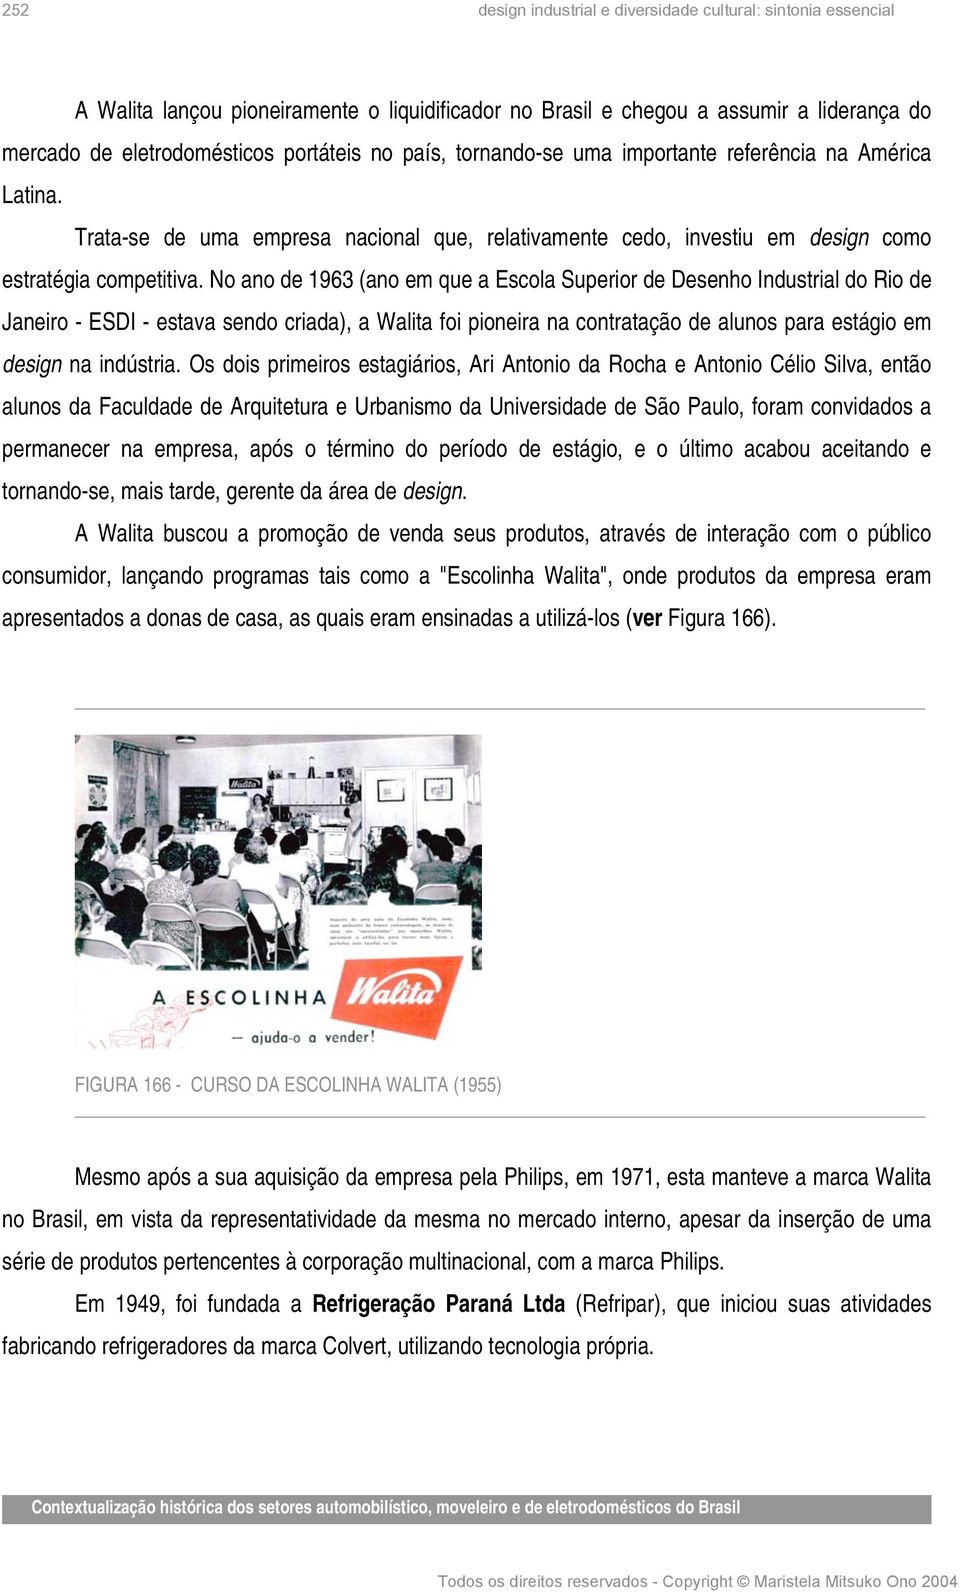 No ano de 1963 (ano em que a Escola Superior de Desenho Industrial do Rio de Janeiro - ESDI - estava sendo criada), a Walita foi pioneira na contratação de alunos para estágio em design na indústria.